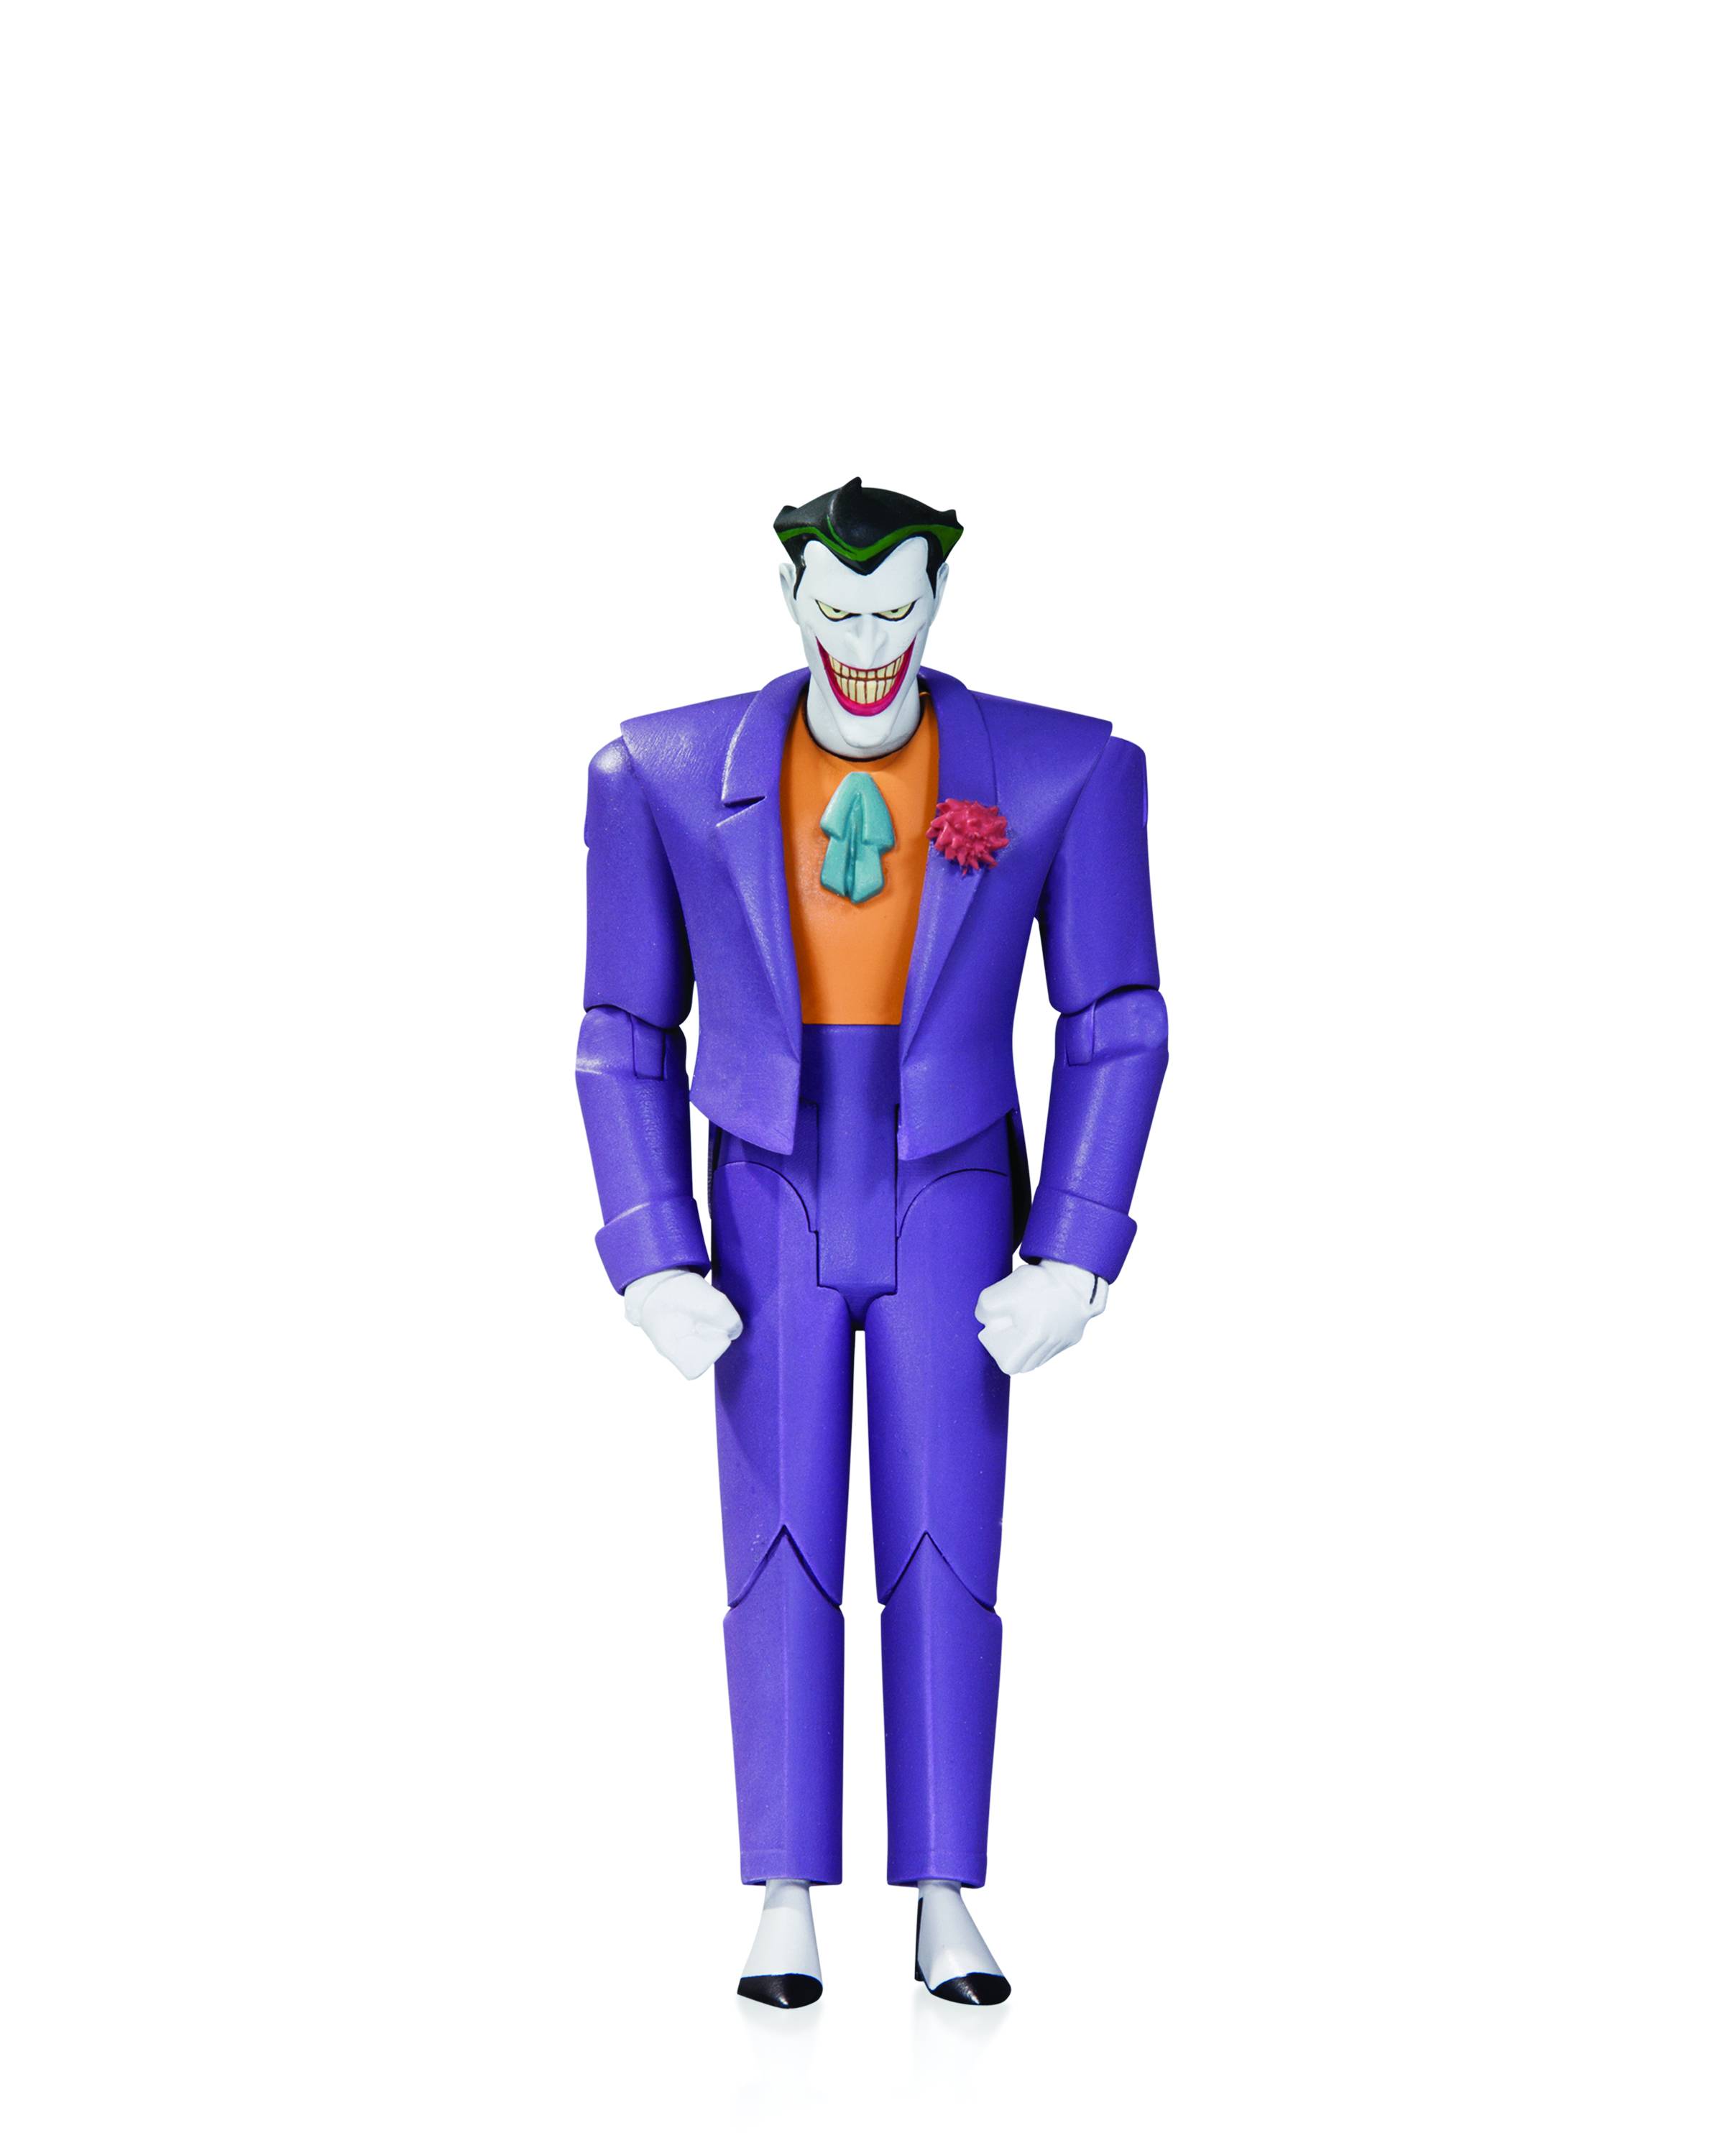 Batman Animated Series the Joker Action Figure